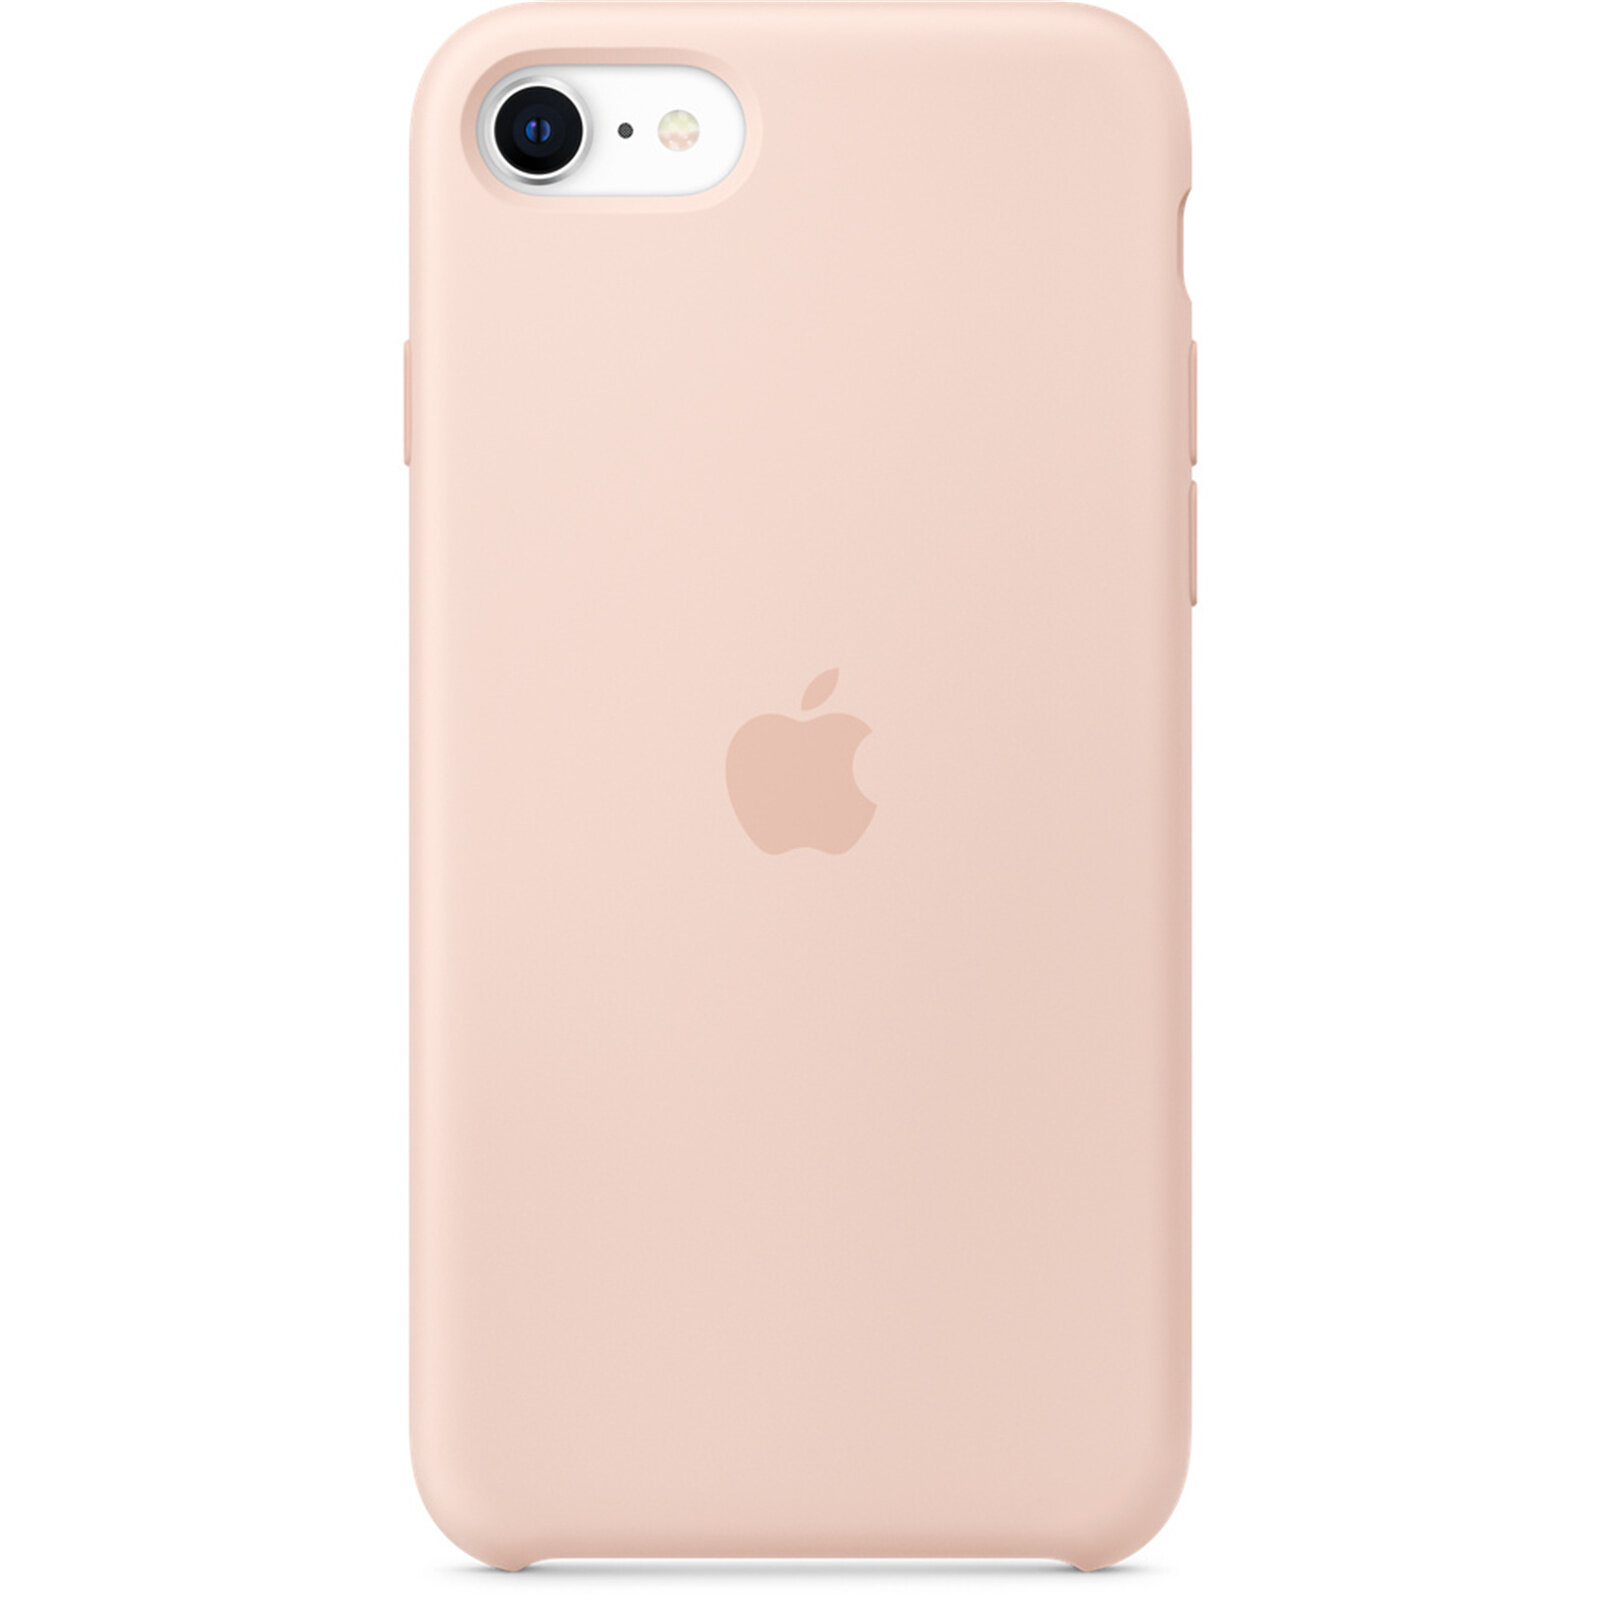 Чехол силиконовый Apple iPhone SE Silicone Case Pink Sand (Розовый песок) MXYK2ZM/A